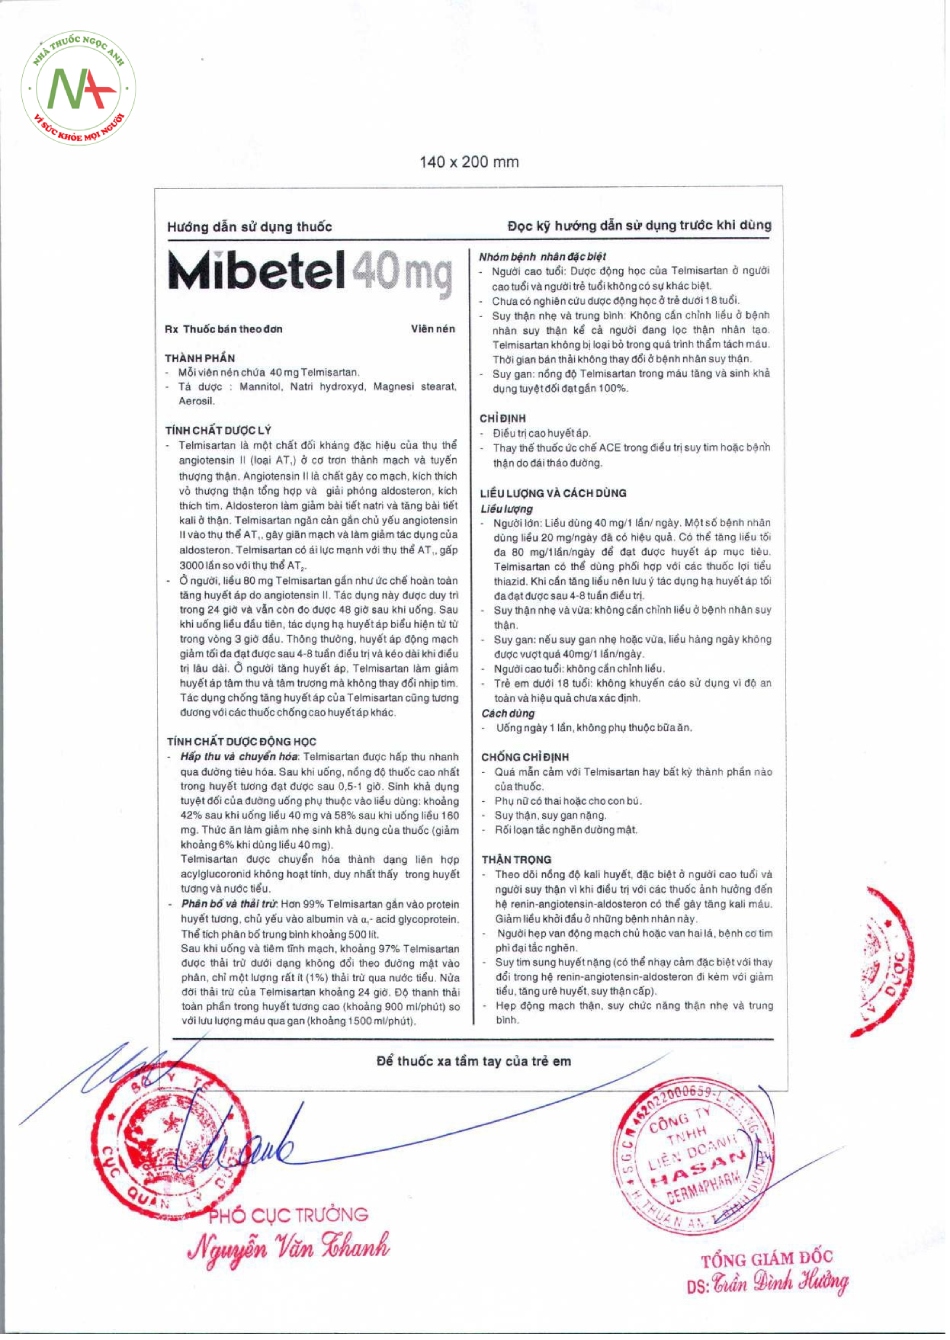 Hướng dẫn sử dụng thuốc Mibetel 40mg Hasan